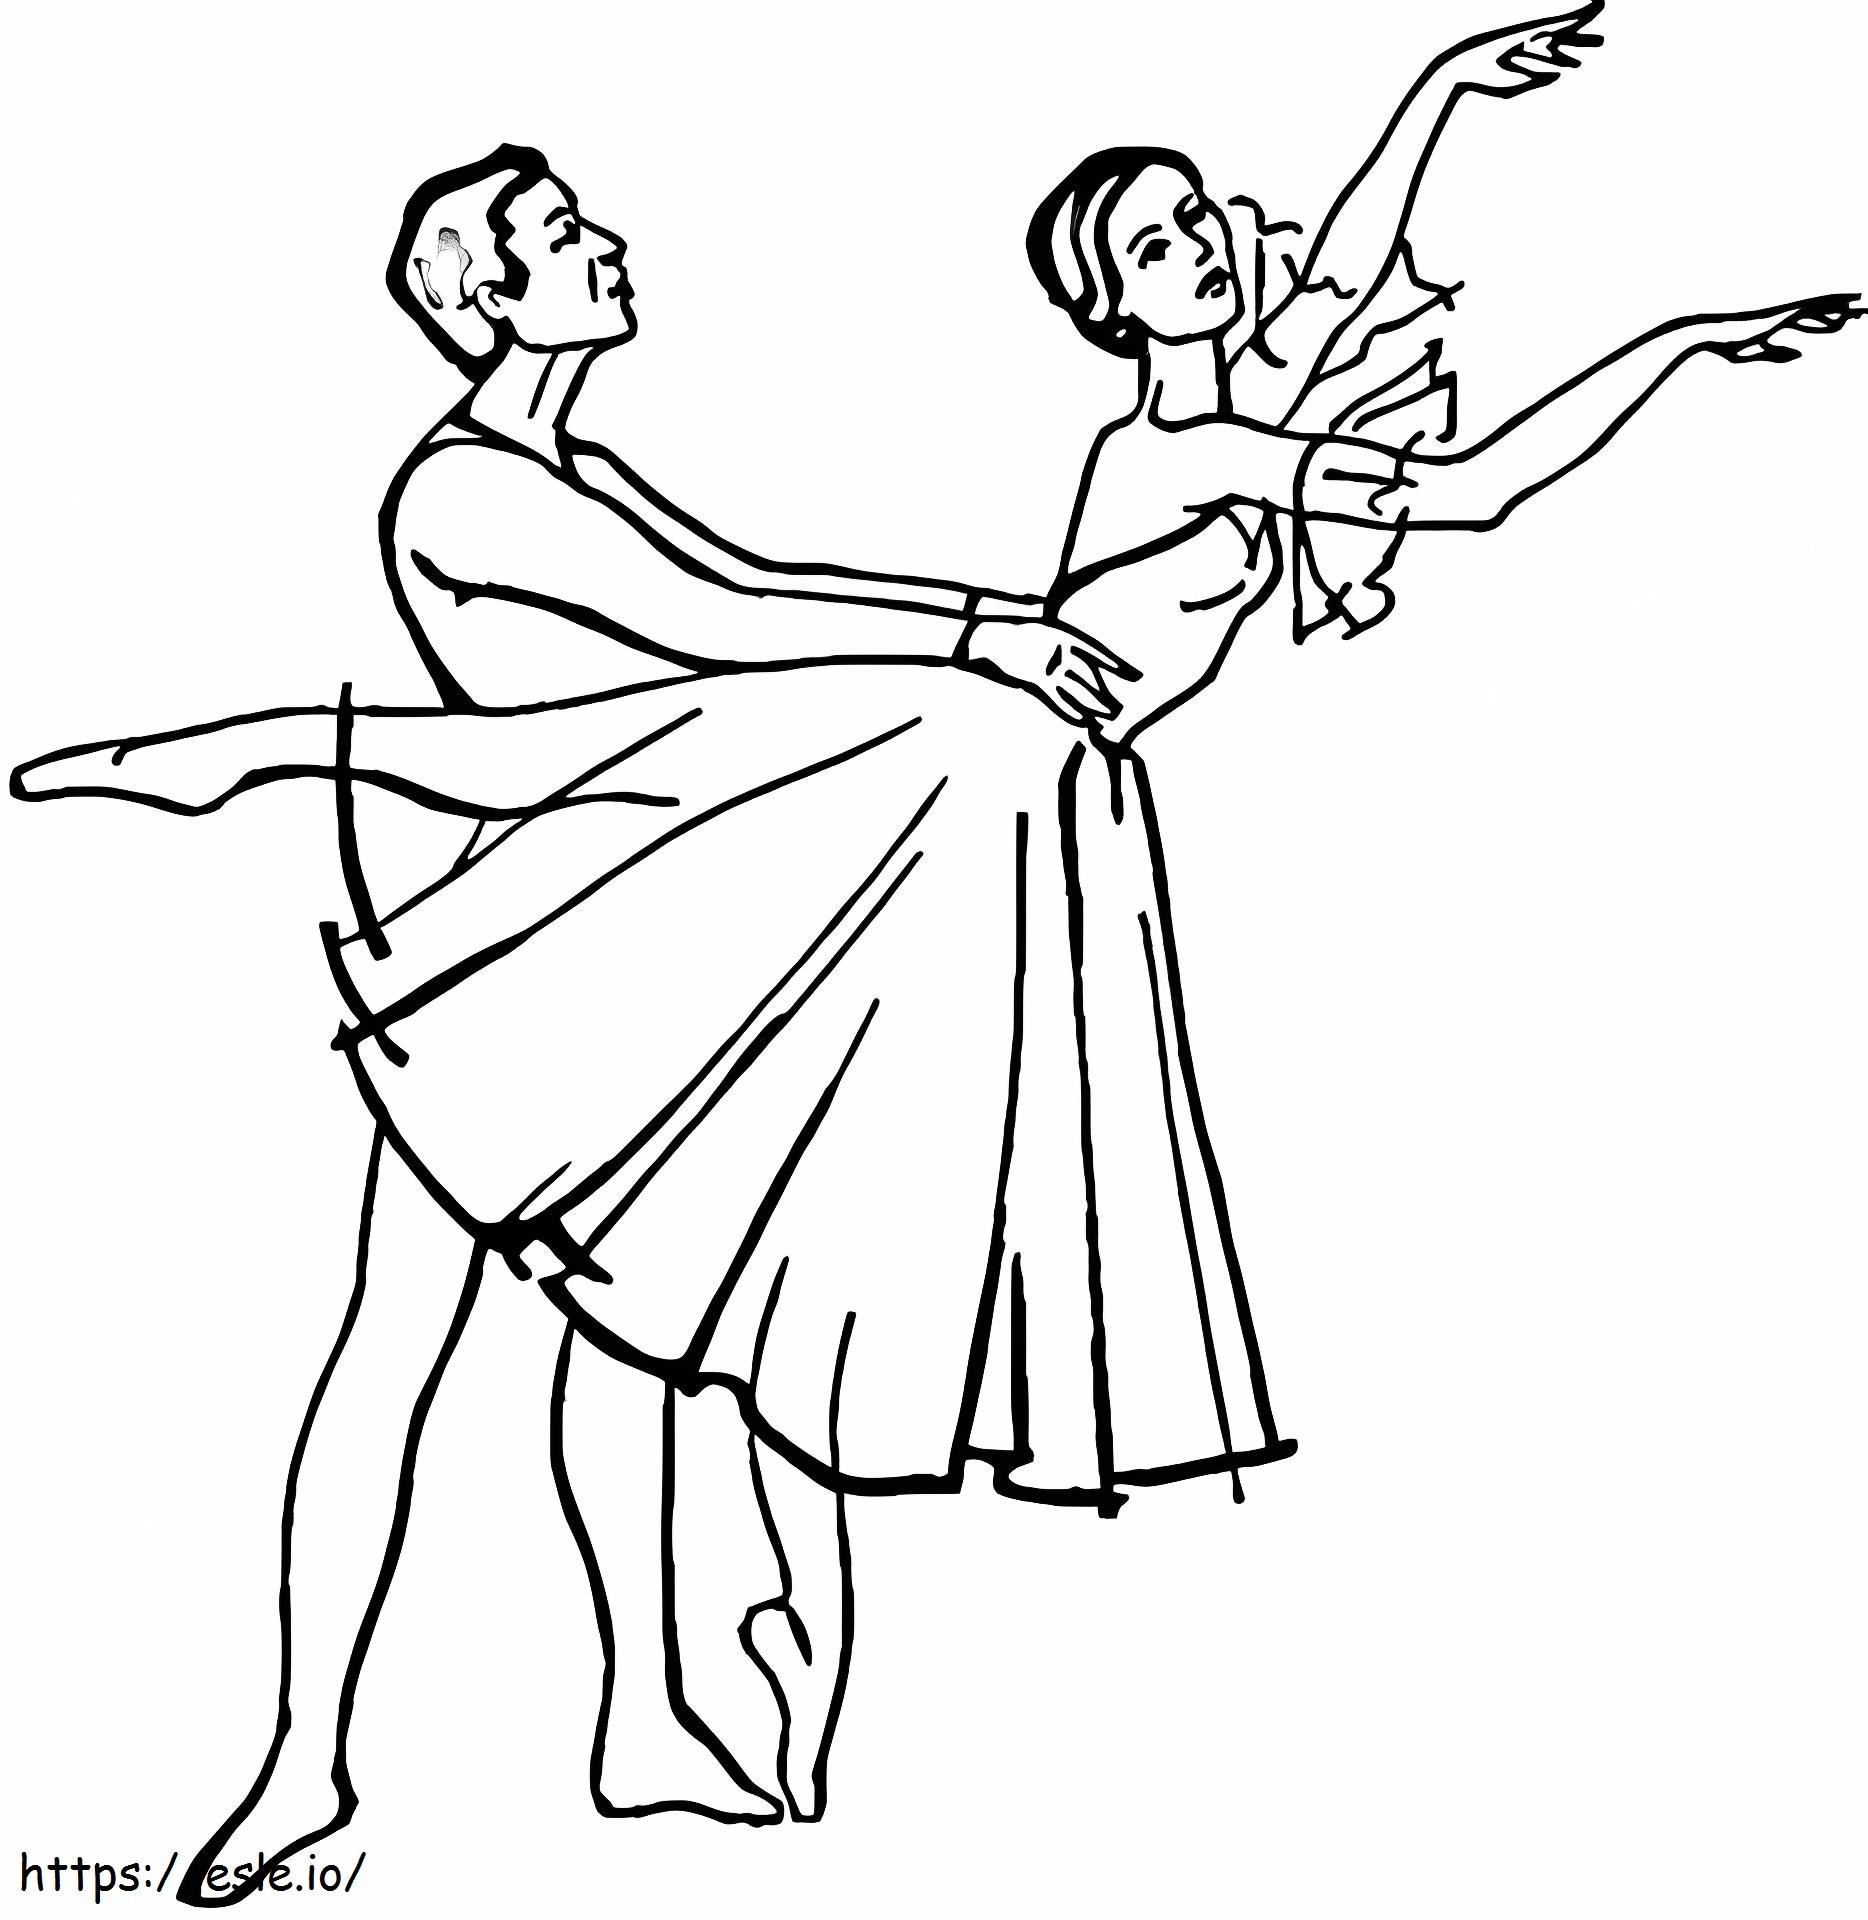 Giselle'in Dansı boyama